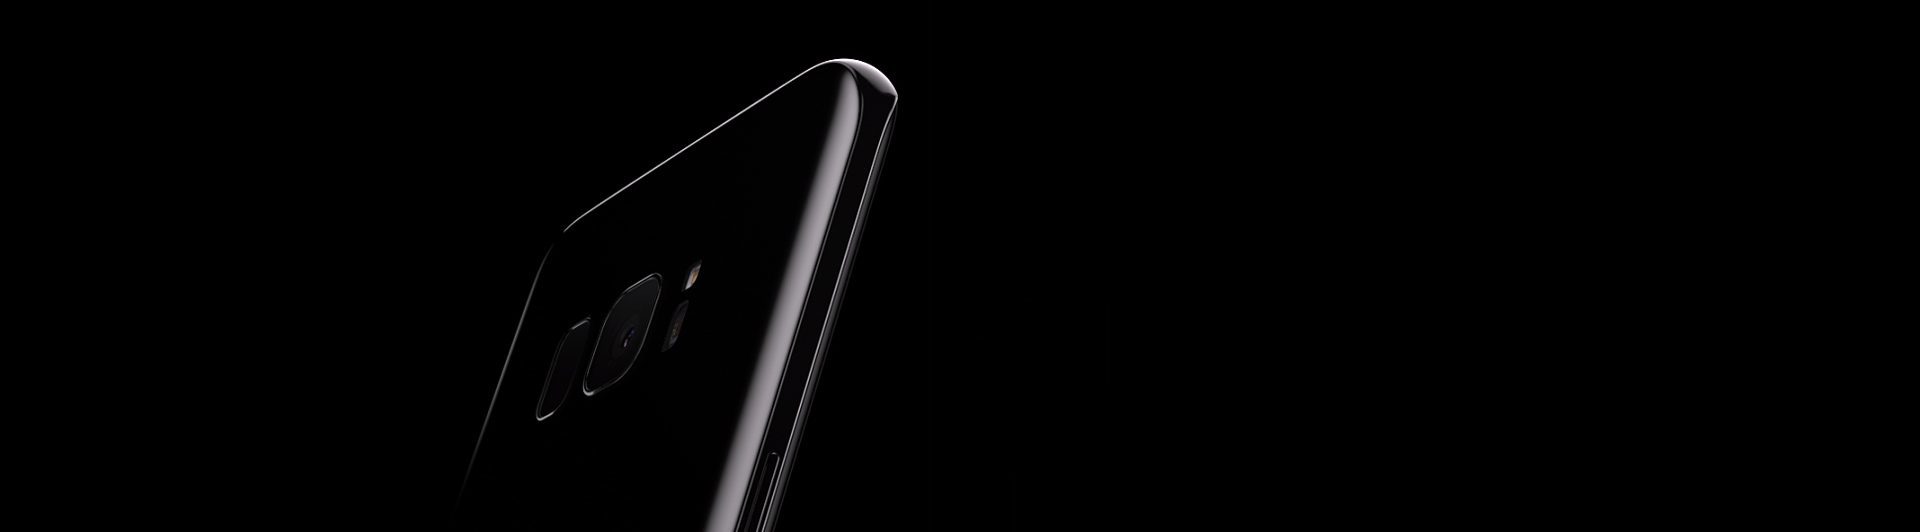 Điện thoại Samsung Galaxy S8 plus đen màu đen đẹp mắt